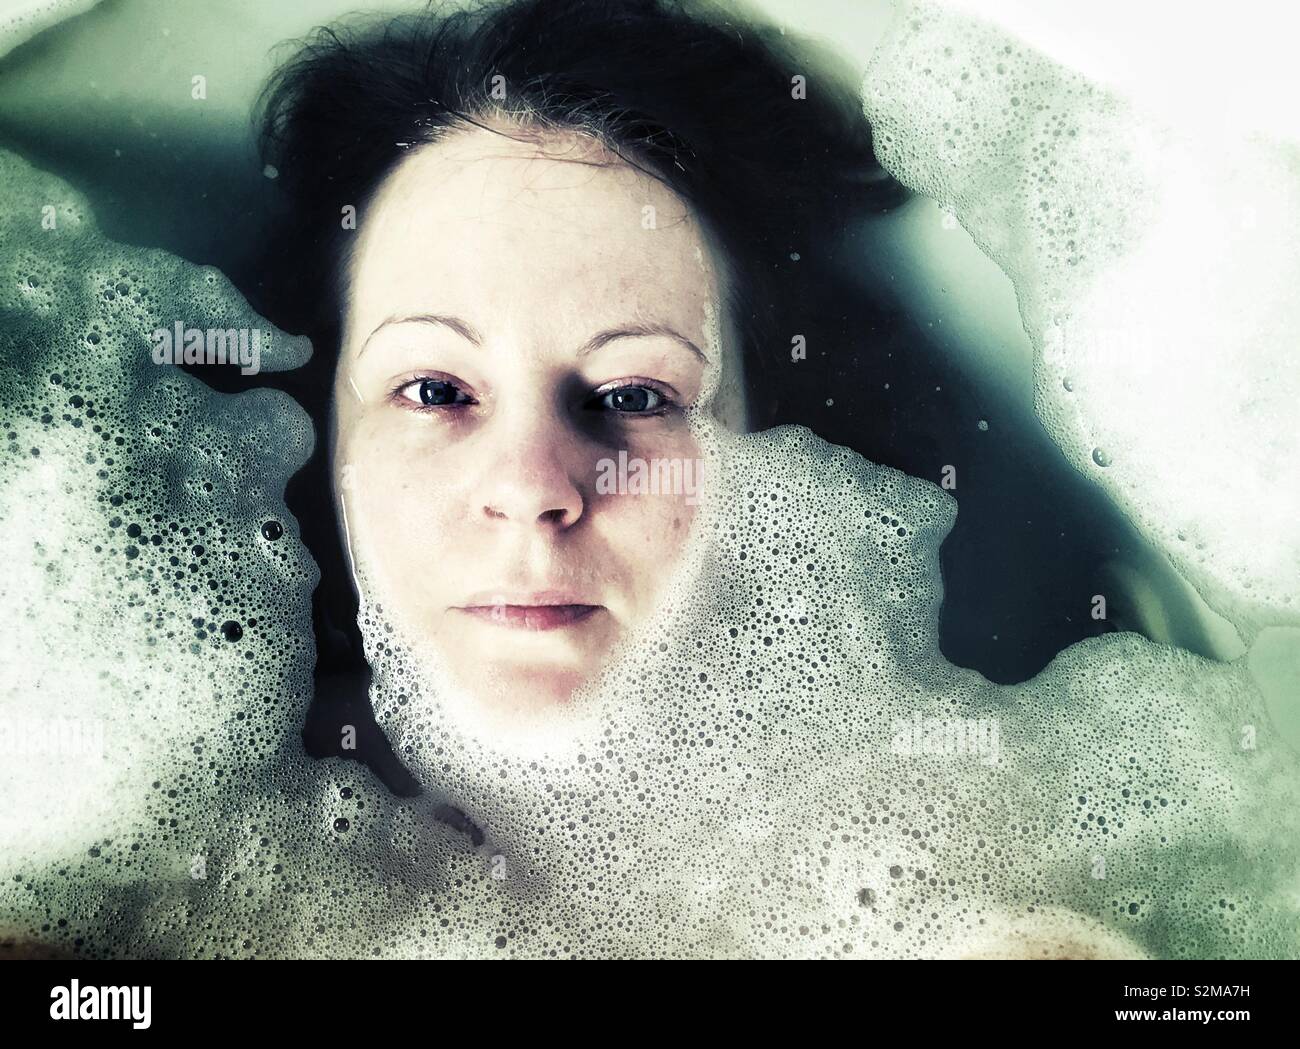 Visage de femme dans un bain de mousse looking at camera Banque D'Images